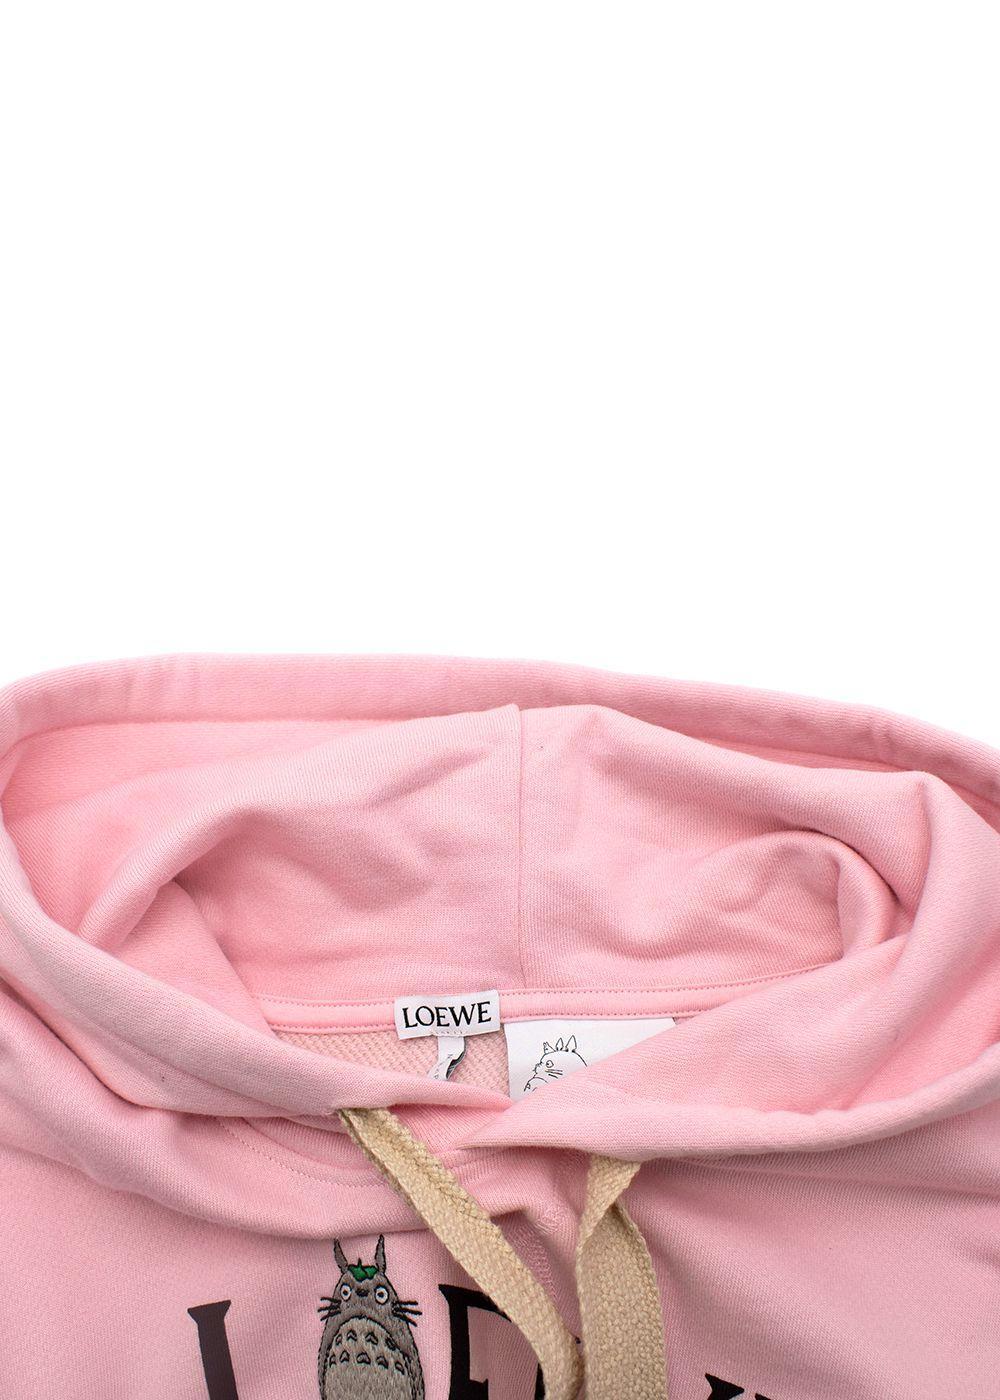 loewe hoodie pink